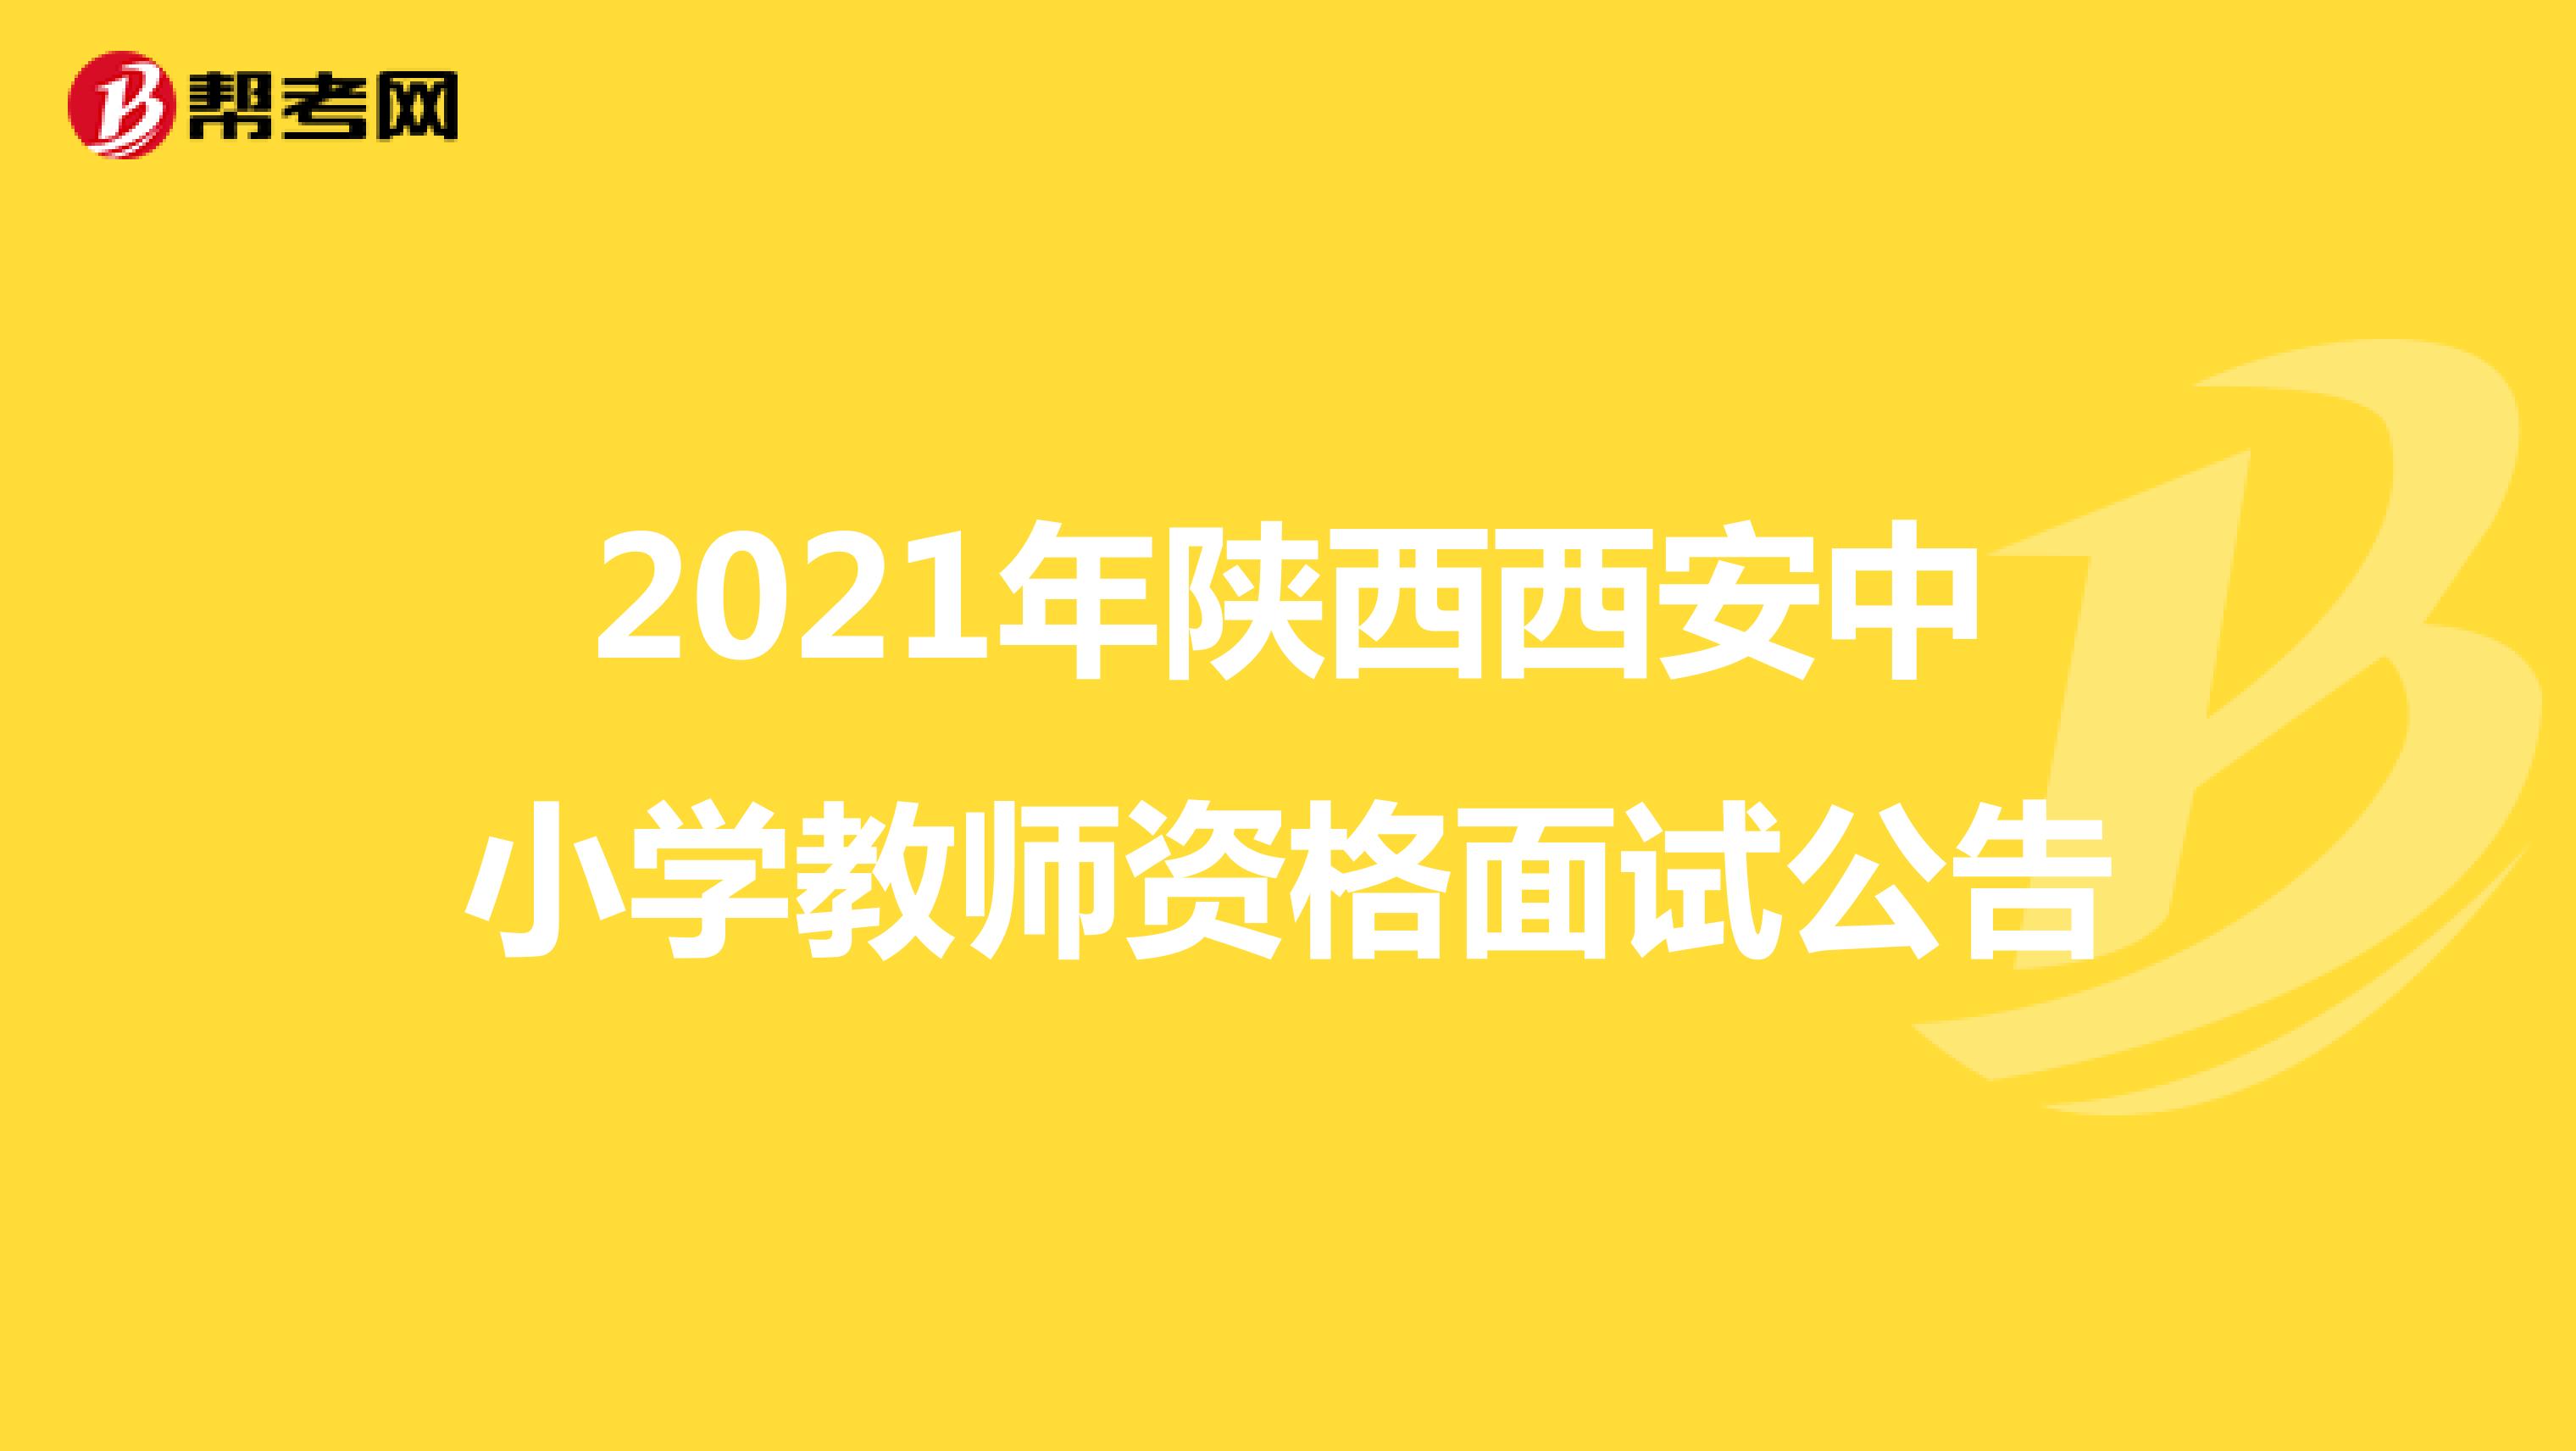 2021年陕西西安中小学教师资格面试公告